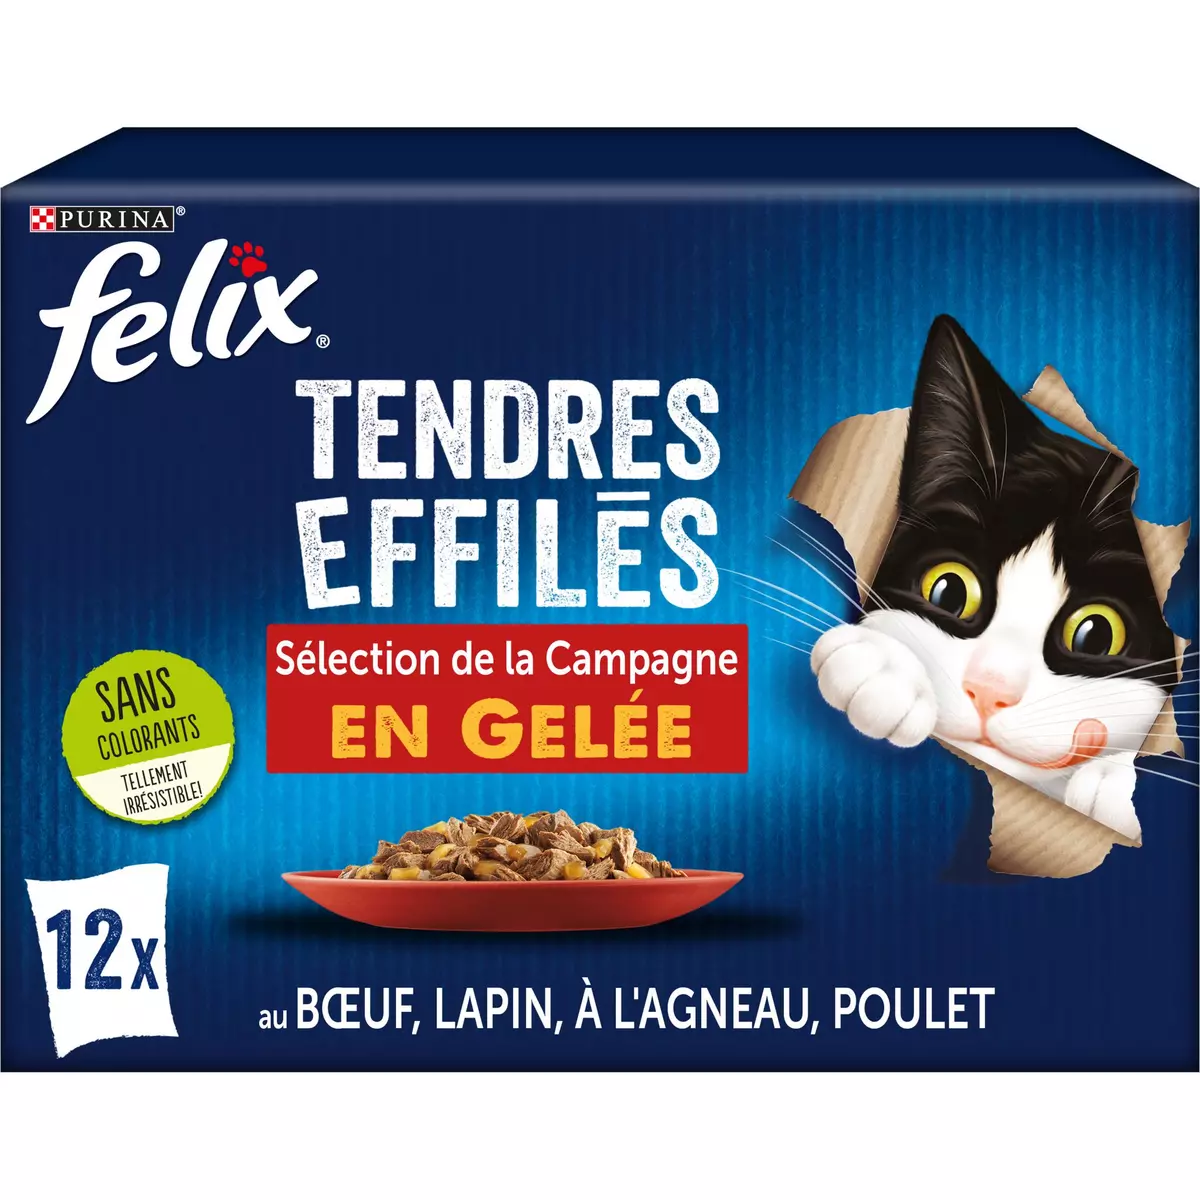 FELIX Sachets repas tendres effilés sélection de la campagne en gelée pour chat 12 sachets 12x85g